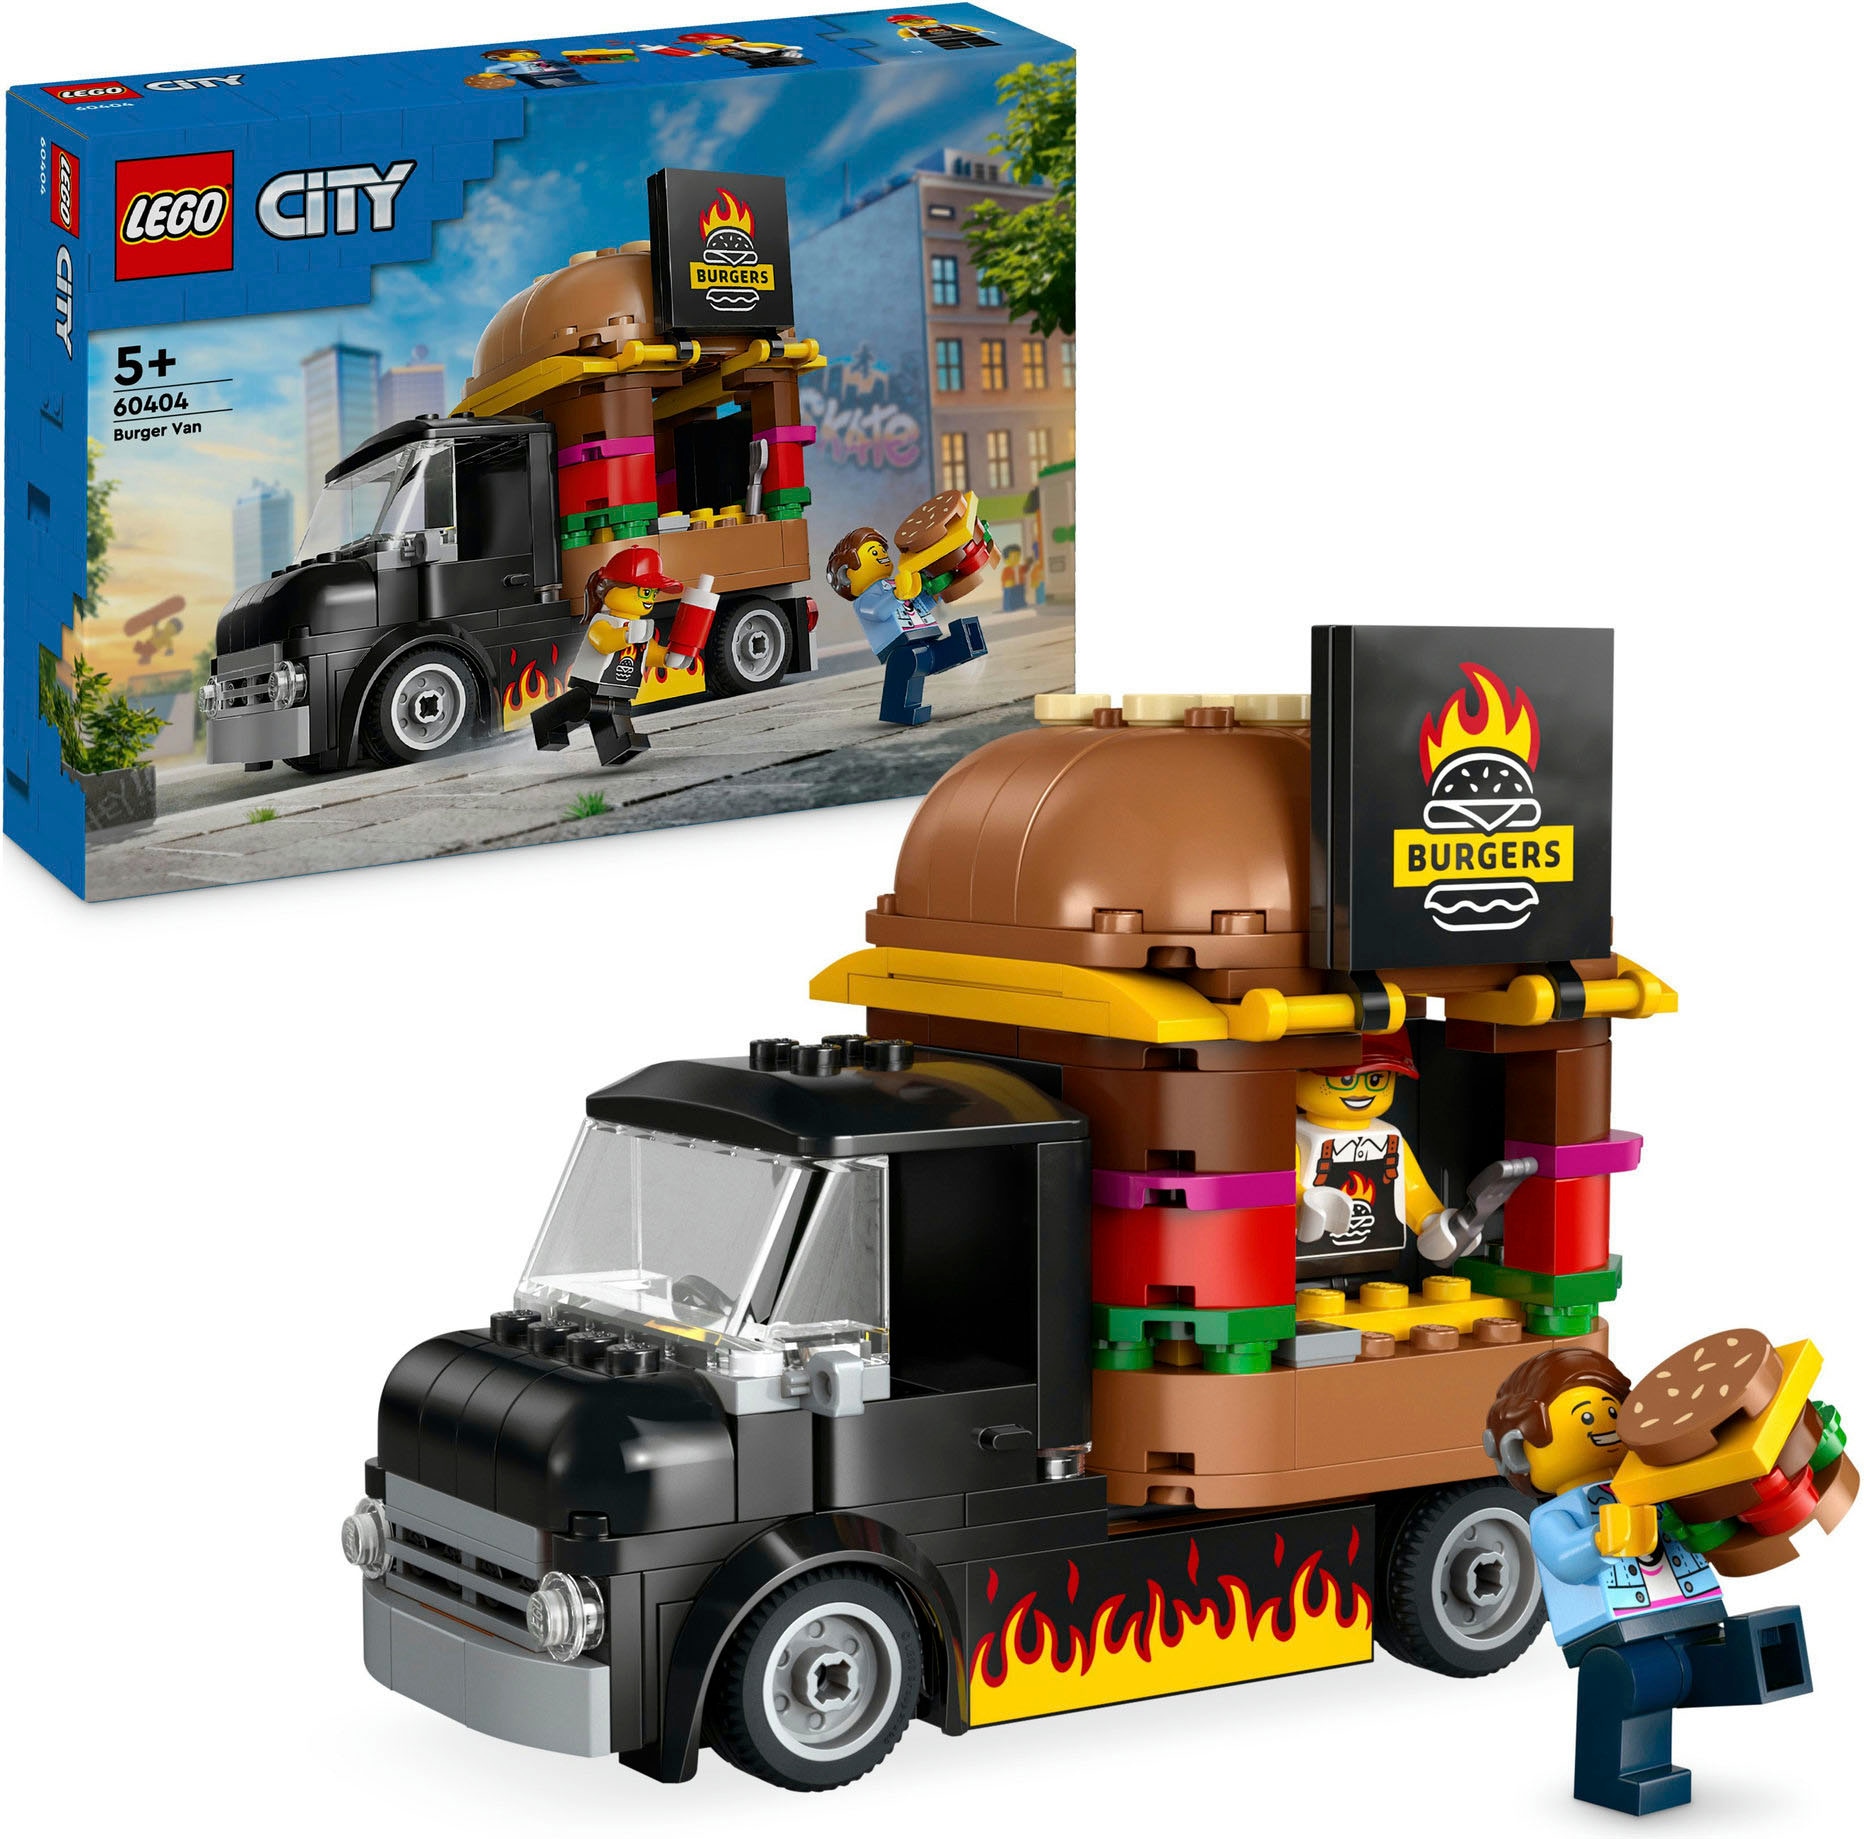 Konstruktionsspielsteine »Burger-Truck (60404), LEGO City«, (194 St.), Made in Europe